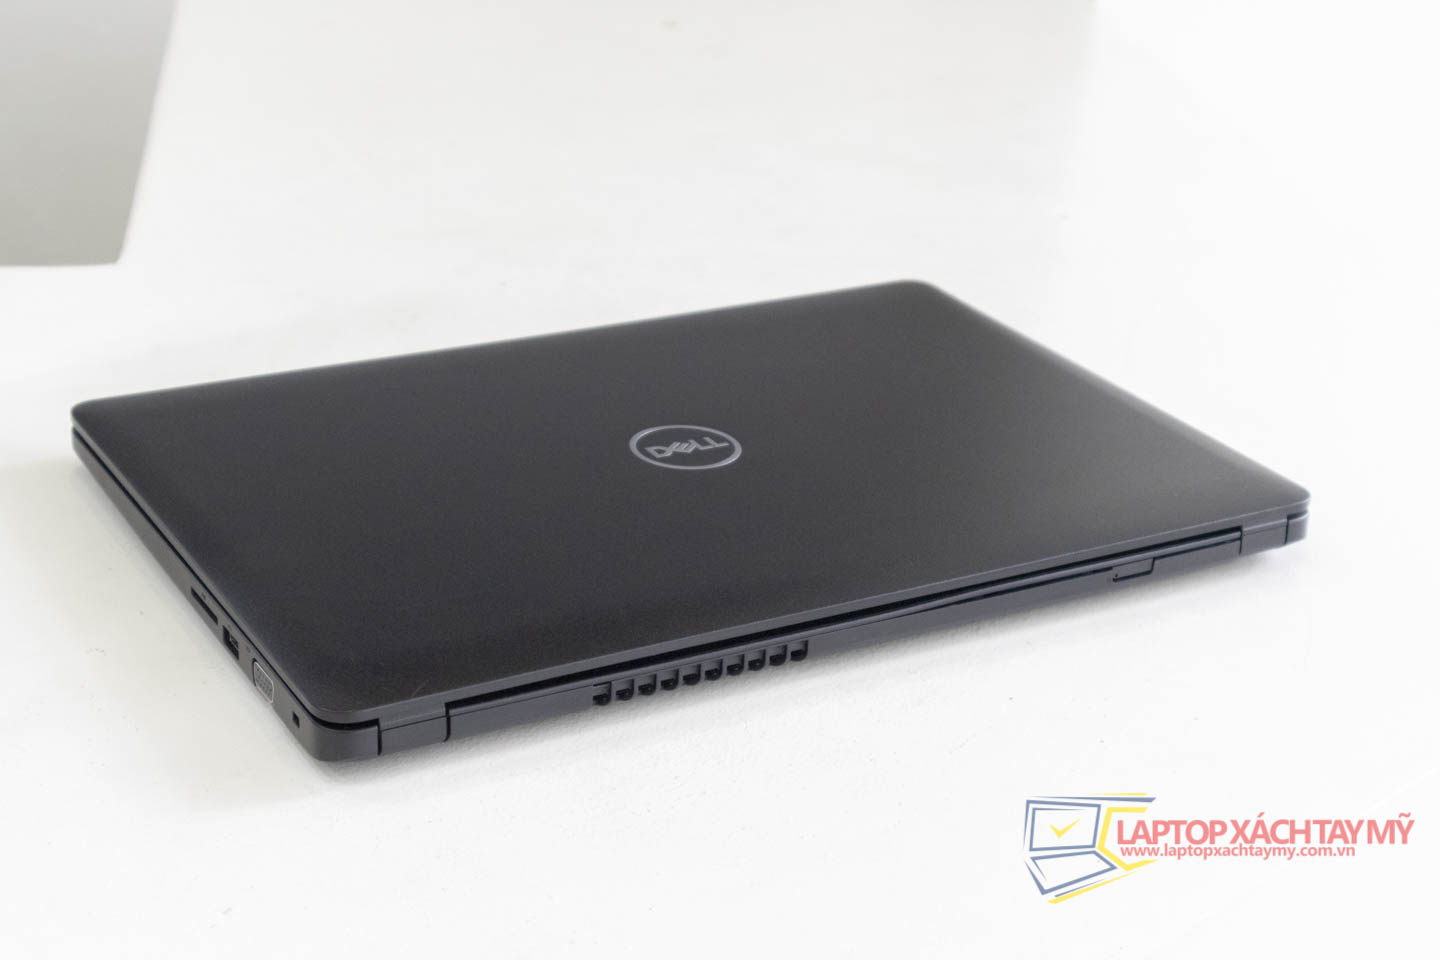 Dell Latitude 3580 Core I5-6200U, Ram 8G, SSD 256G, 15.6 In HD